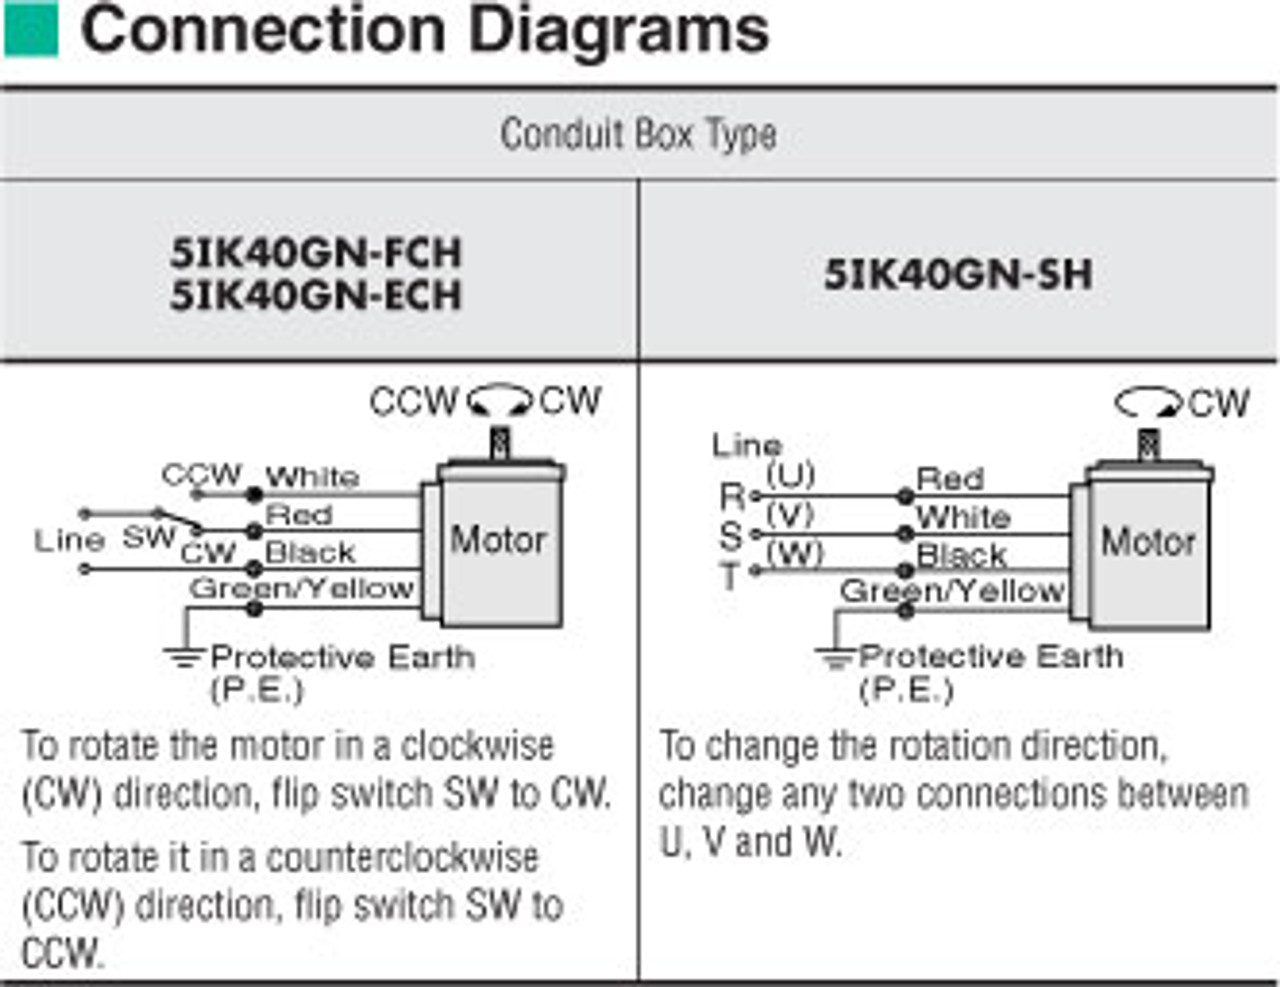 5IK40GN-ECH / 5GN90KA - Connection